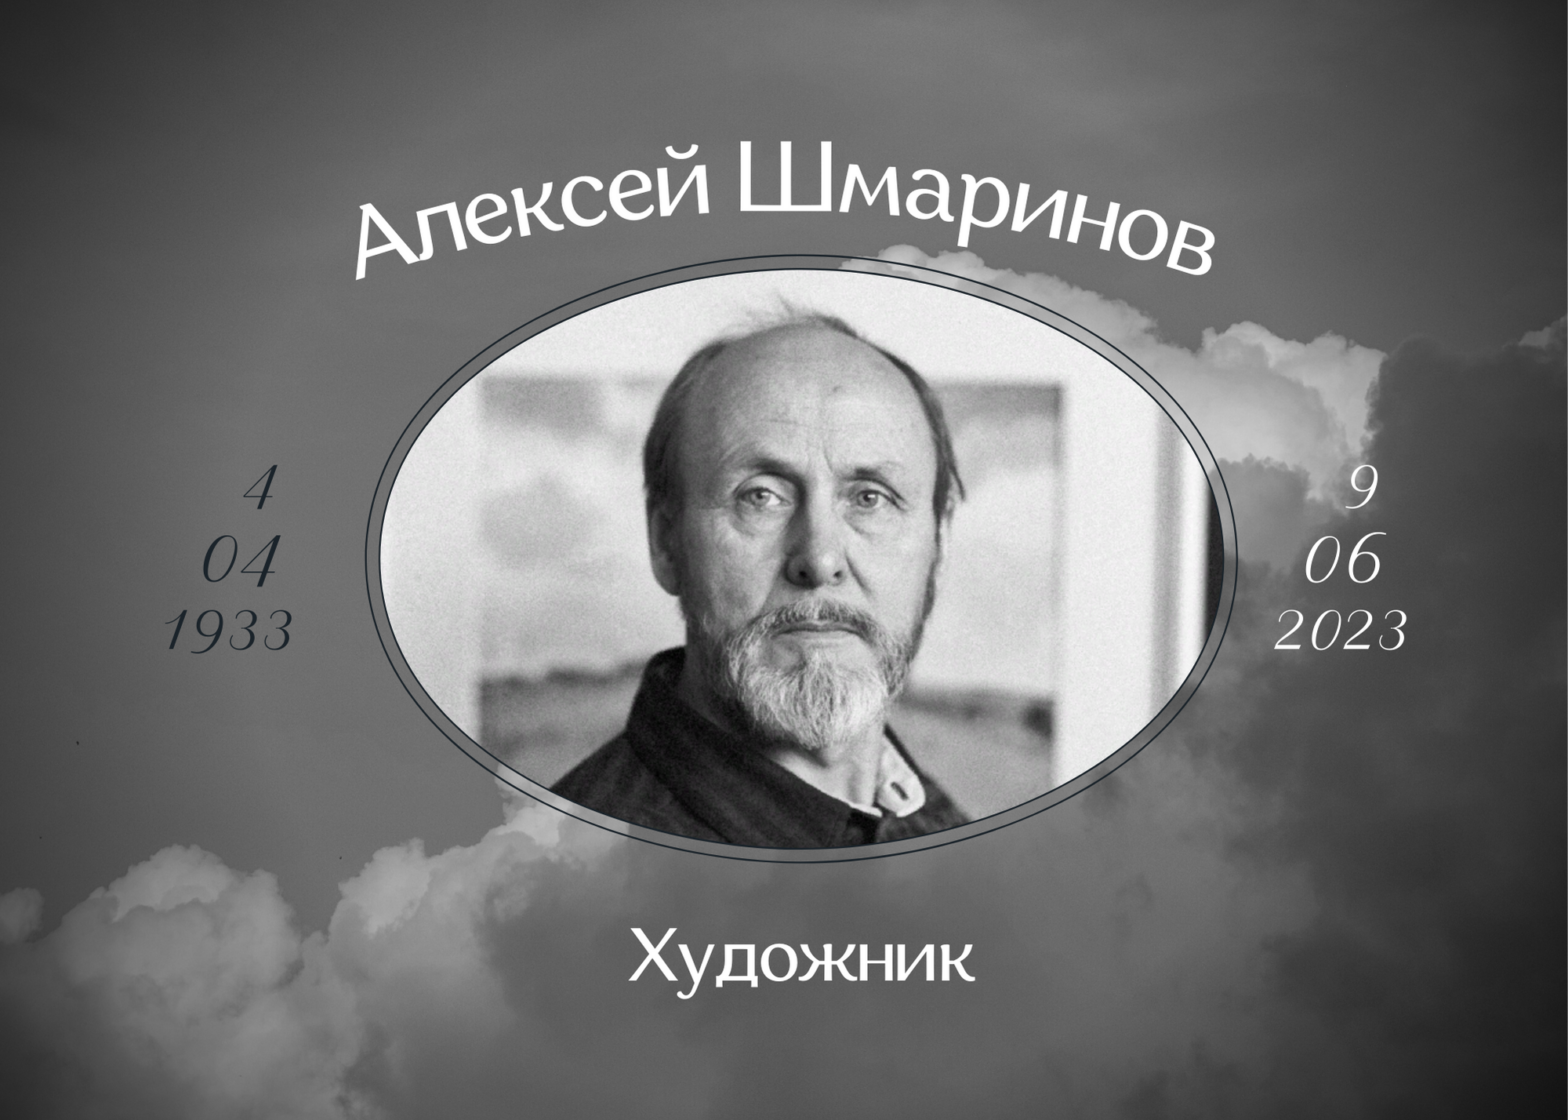 Умер художник Алексей Шмаринов